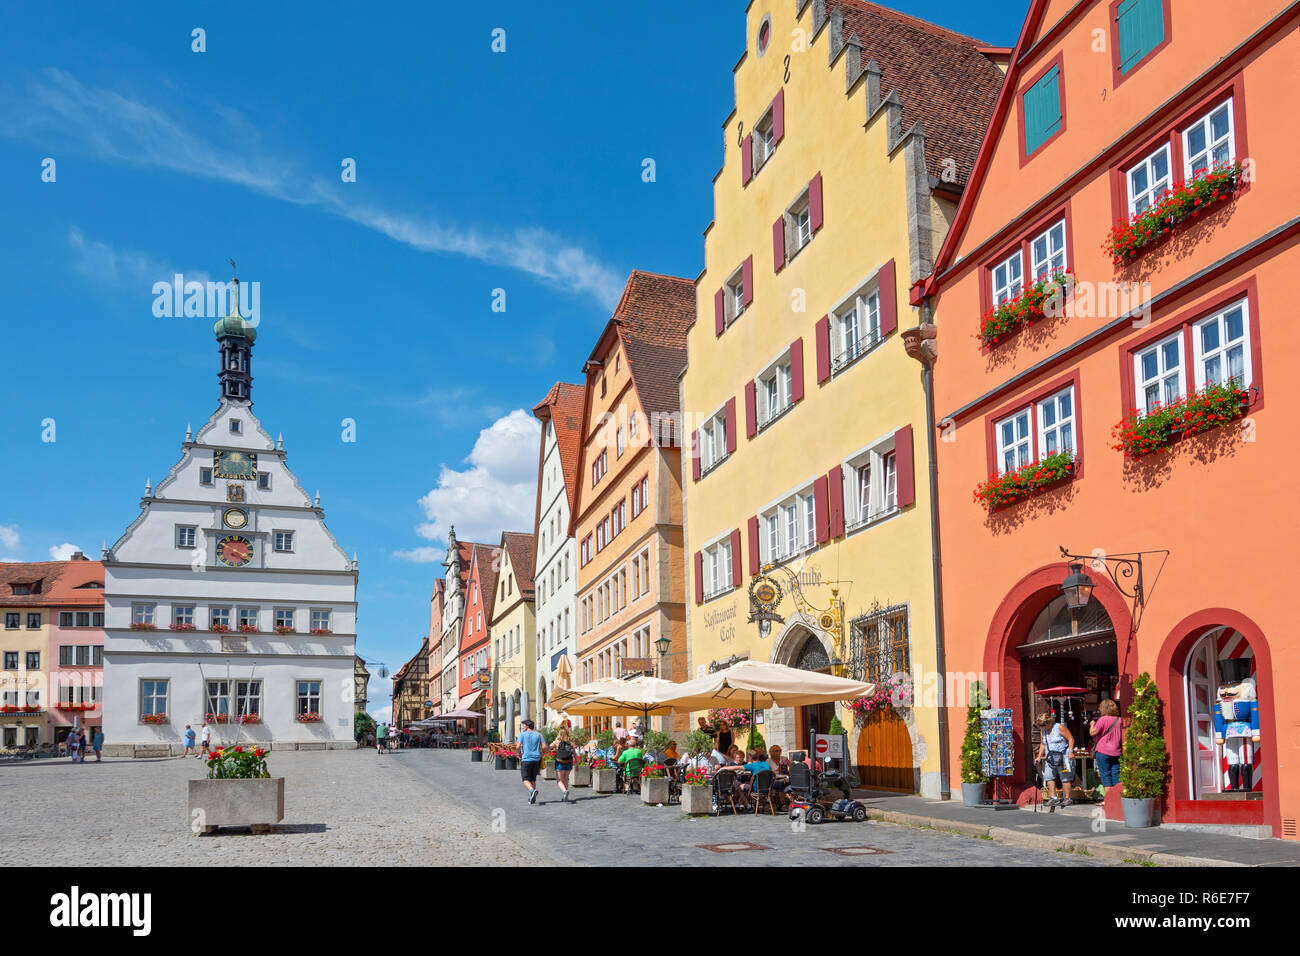 Traditionelle bayerische Häuser am Markplatz in Rothenburg o.d. Tauber, Franken, Bayern, Deutschland Stockfoto